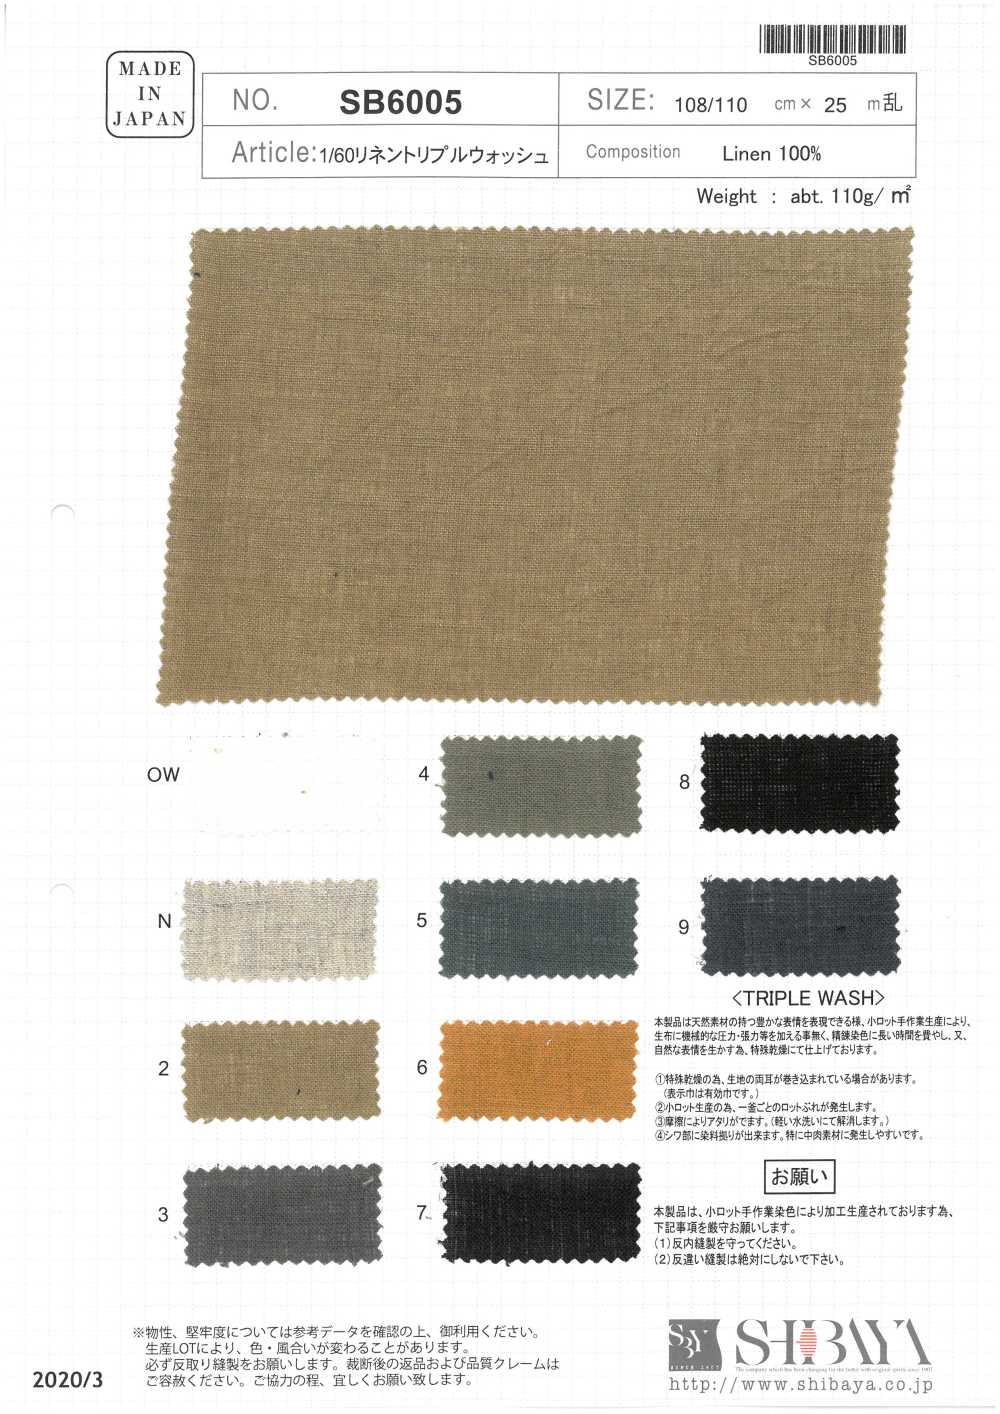 SB6005 1/60 Lino Triple Lavado[Fabrica Textil] SHIBAYA